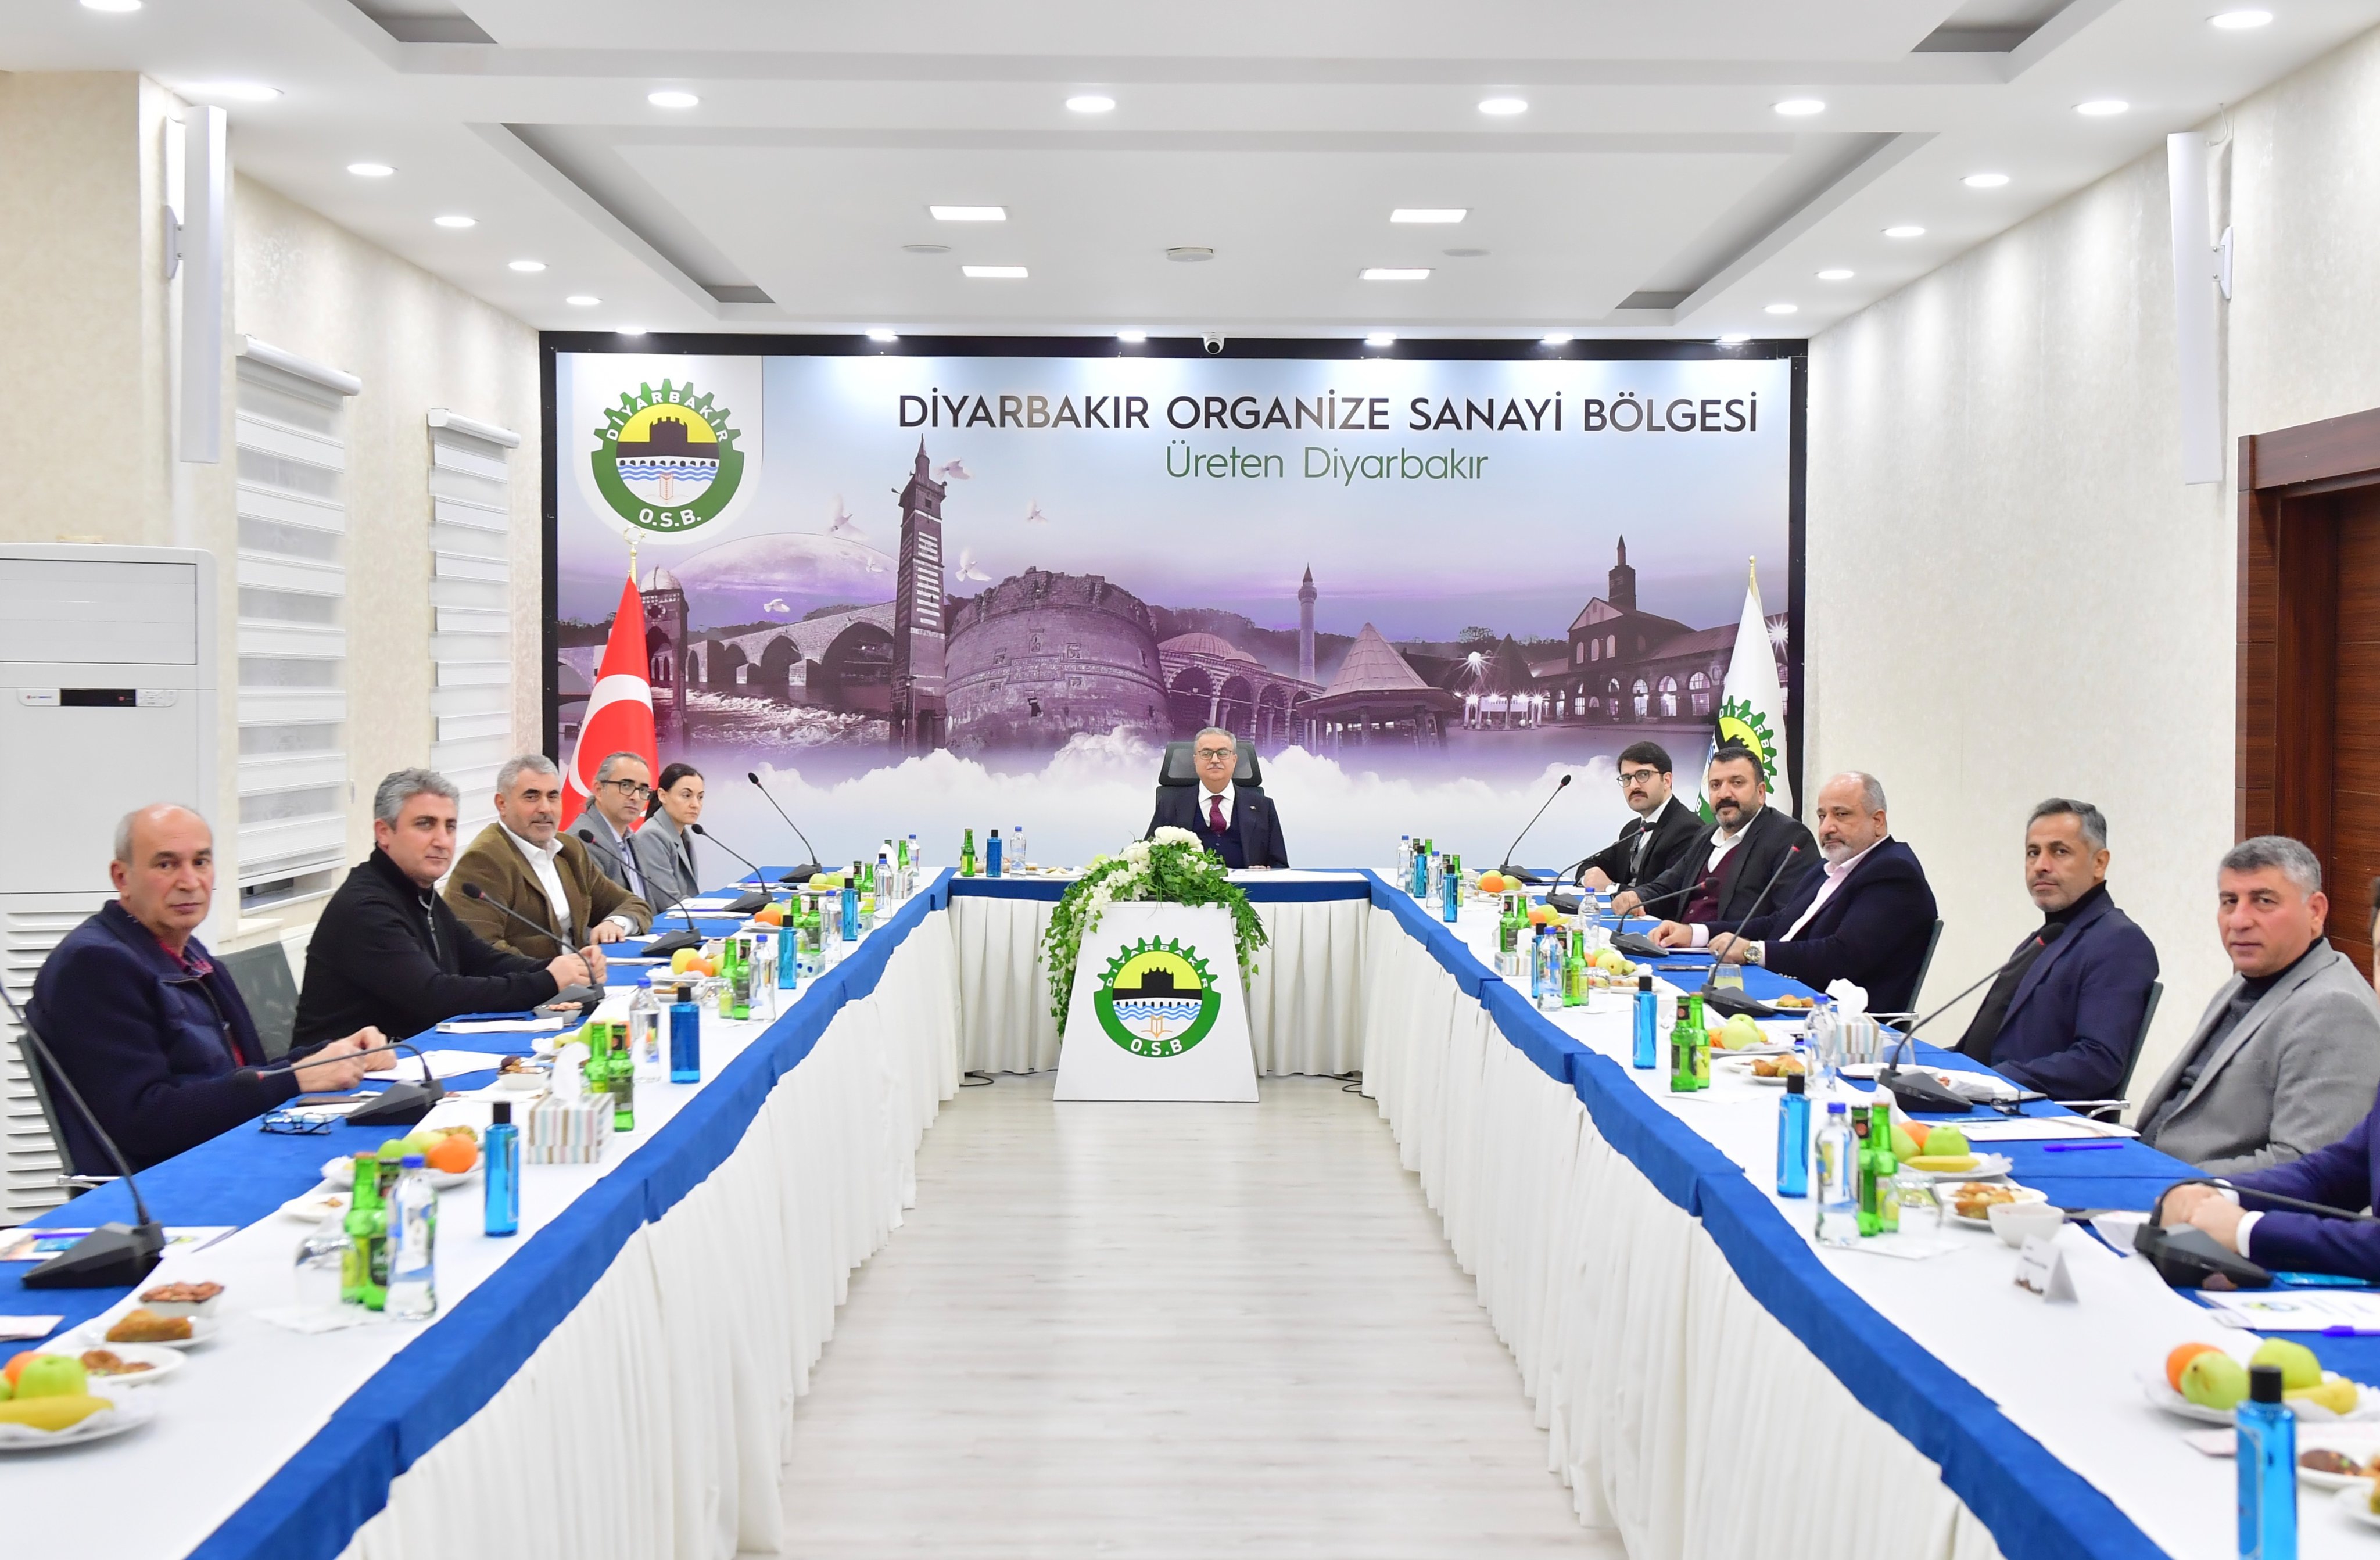 Diyarbakır Organize Sanayi Bölgesi Müteşebbis Heyeti Toplantısı gerçekleşti.